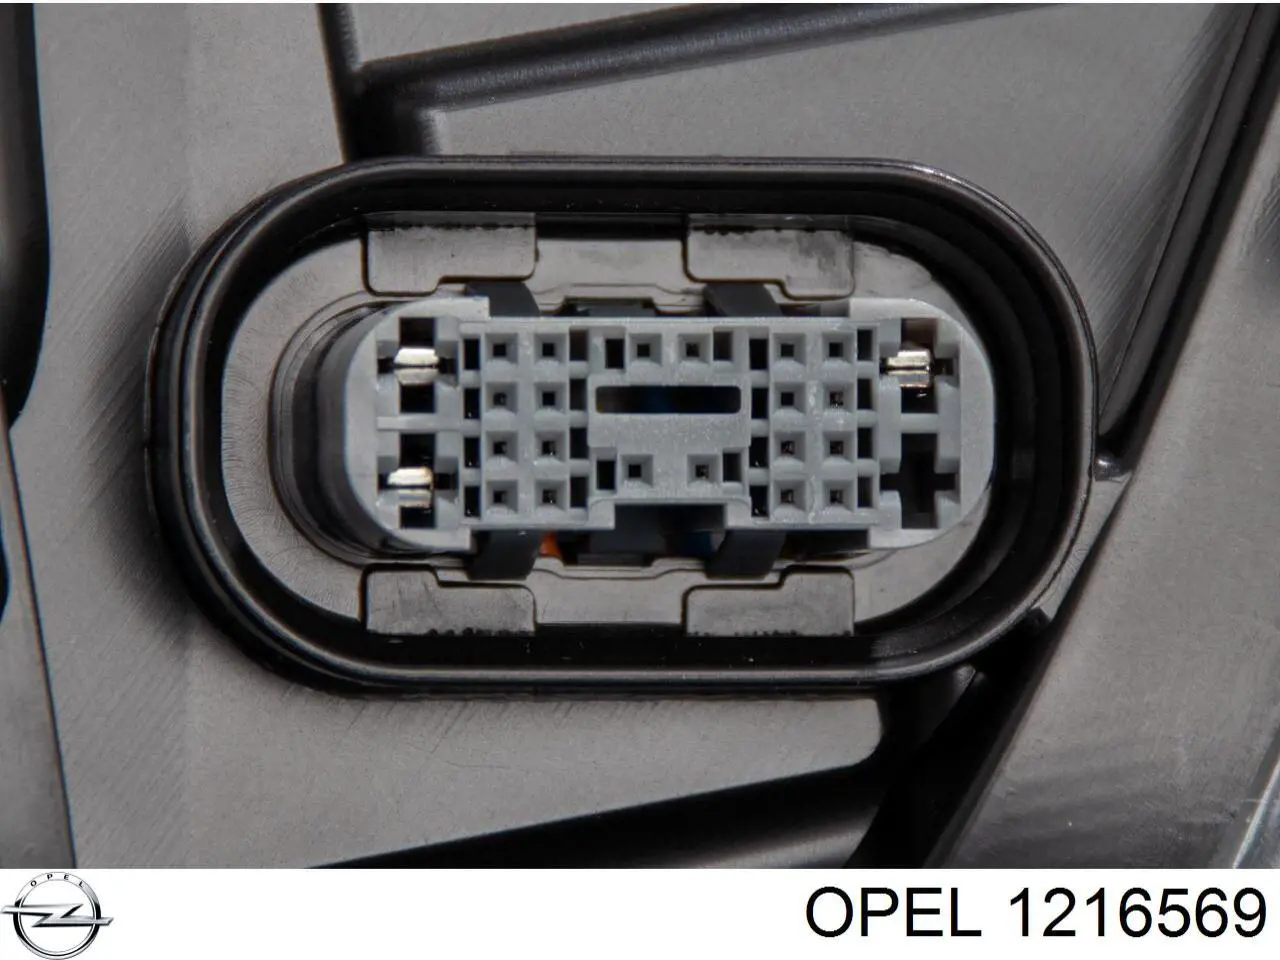 1216569 Opel faro izquierdo